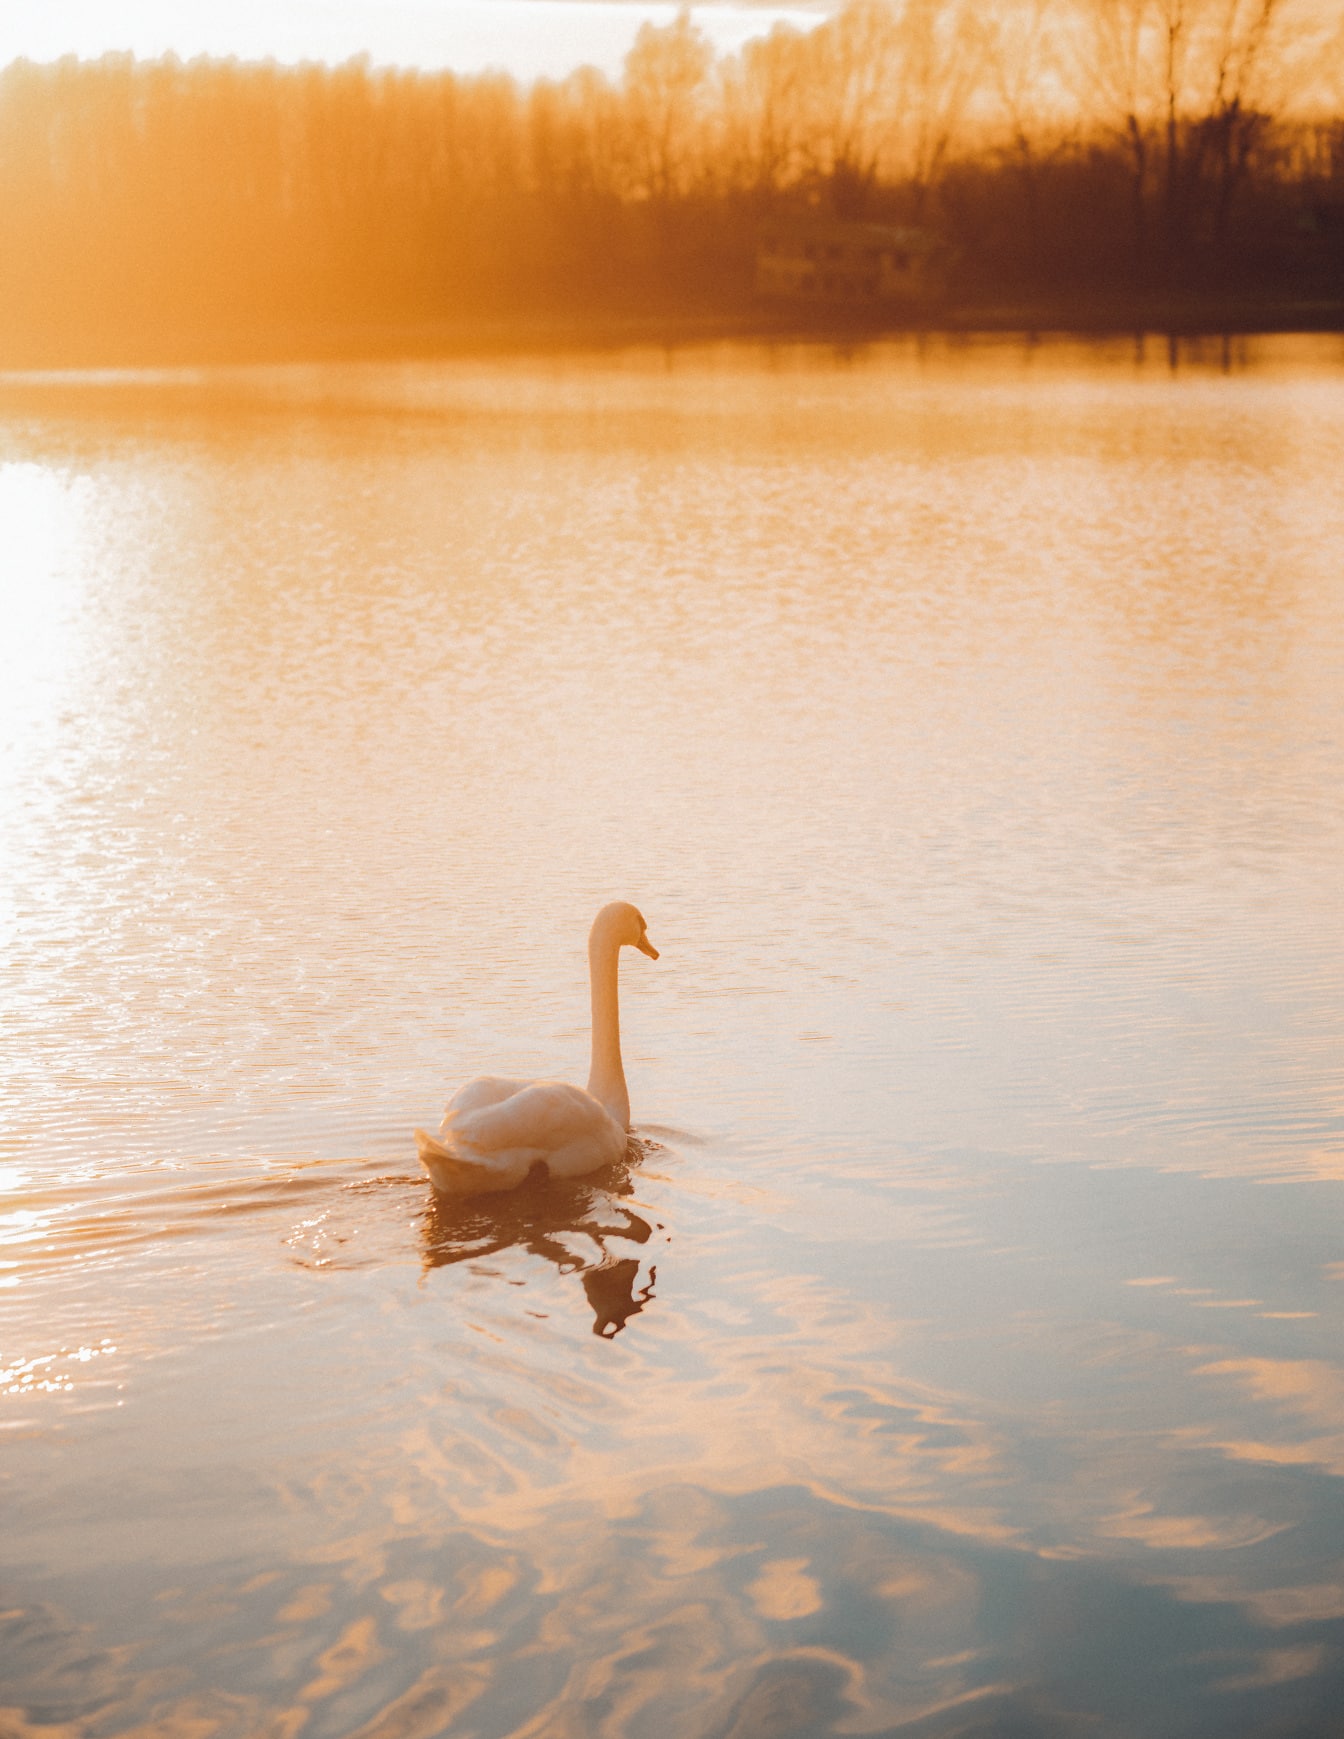 Înot de lebădă pe lac în apus de soare luminos